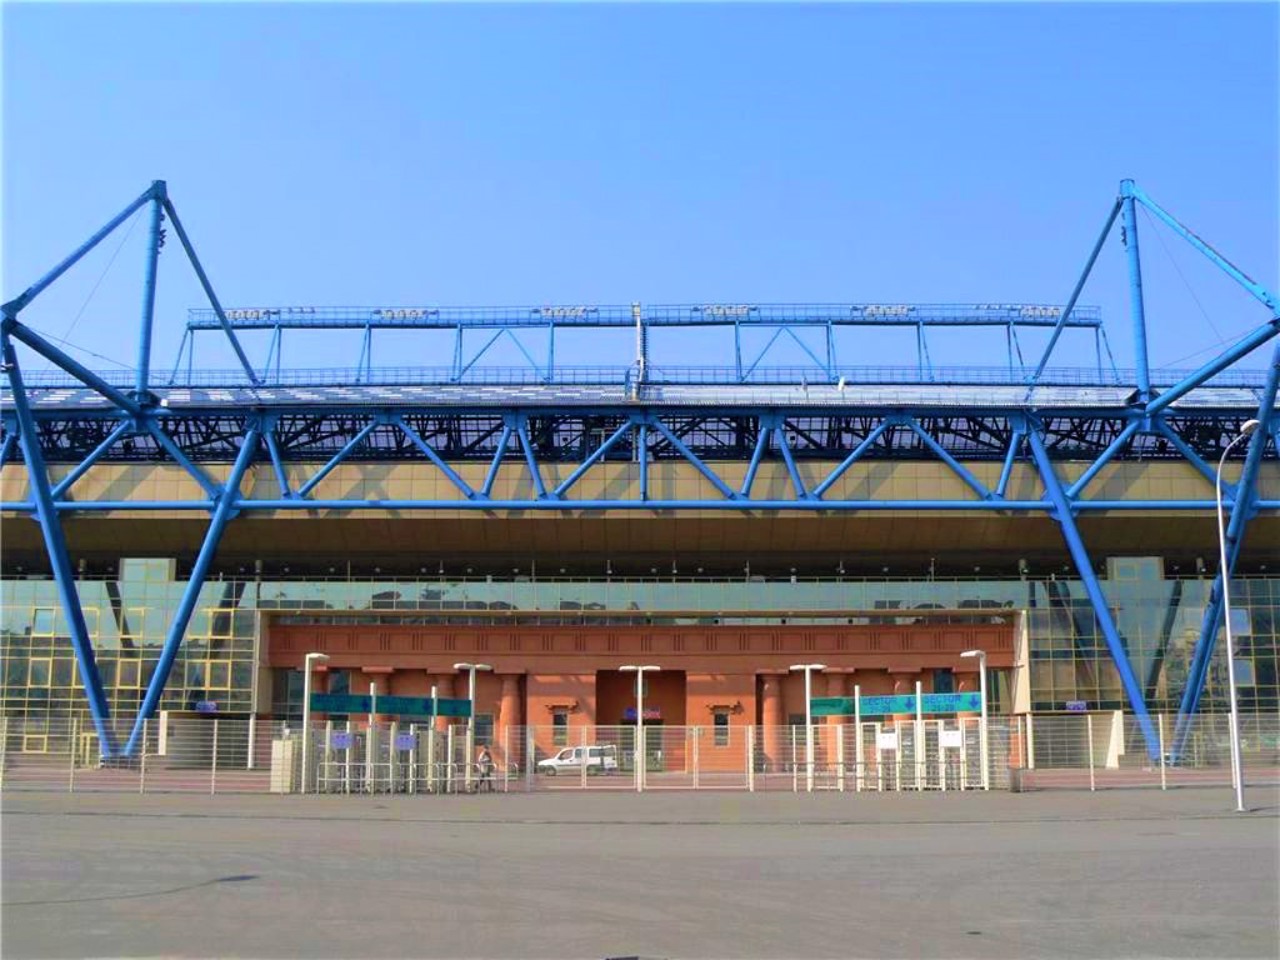 Metalist Stadium, Kharkiv